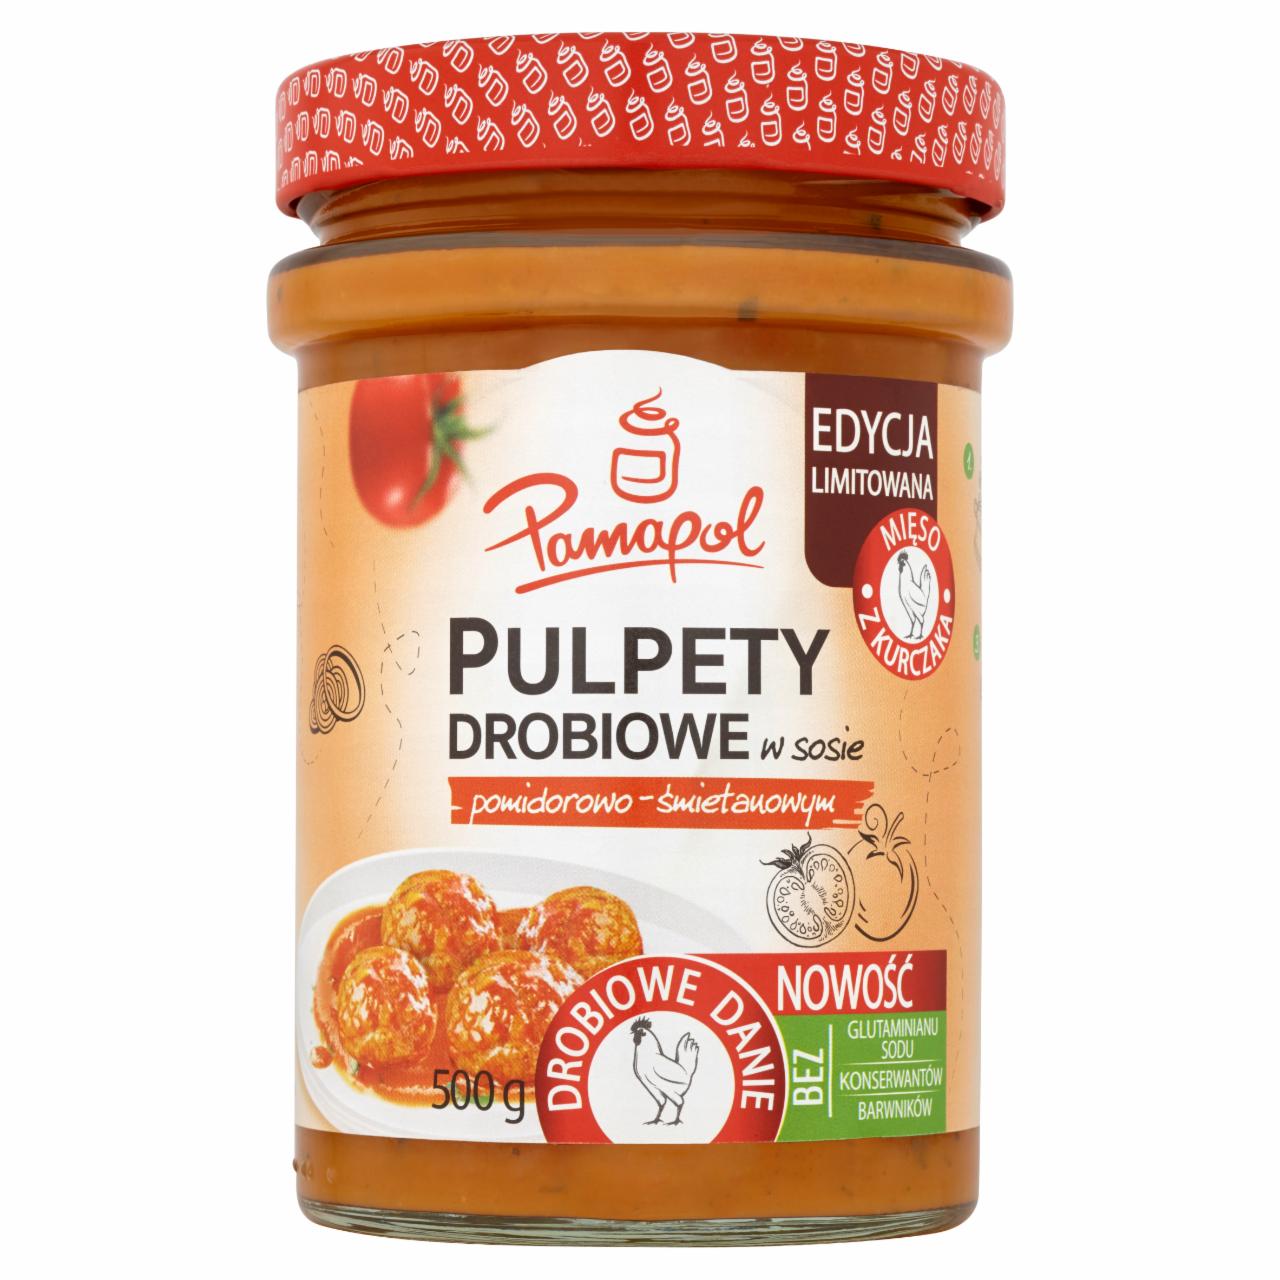 Zdjęcia - Pamapol Pulpety drobiowe w sosie pomidorowo-śmietanowym 500 g